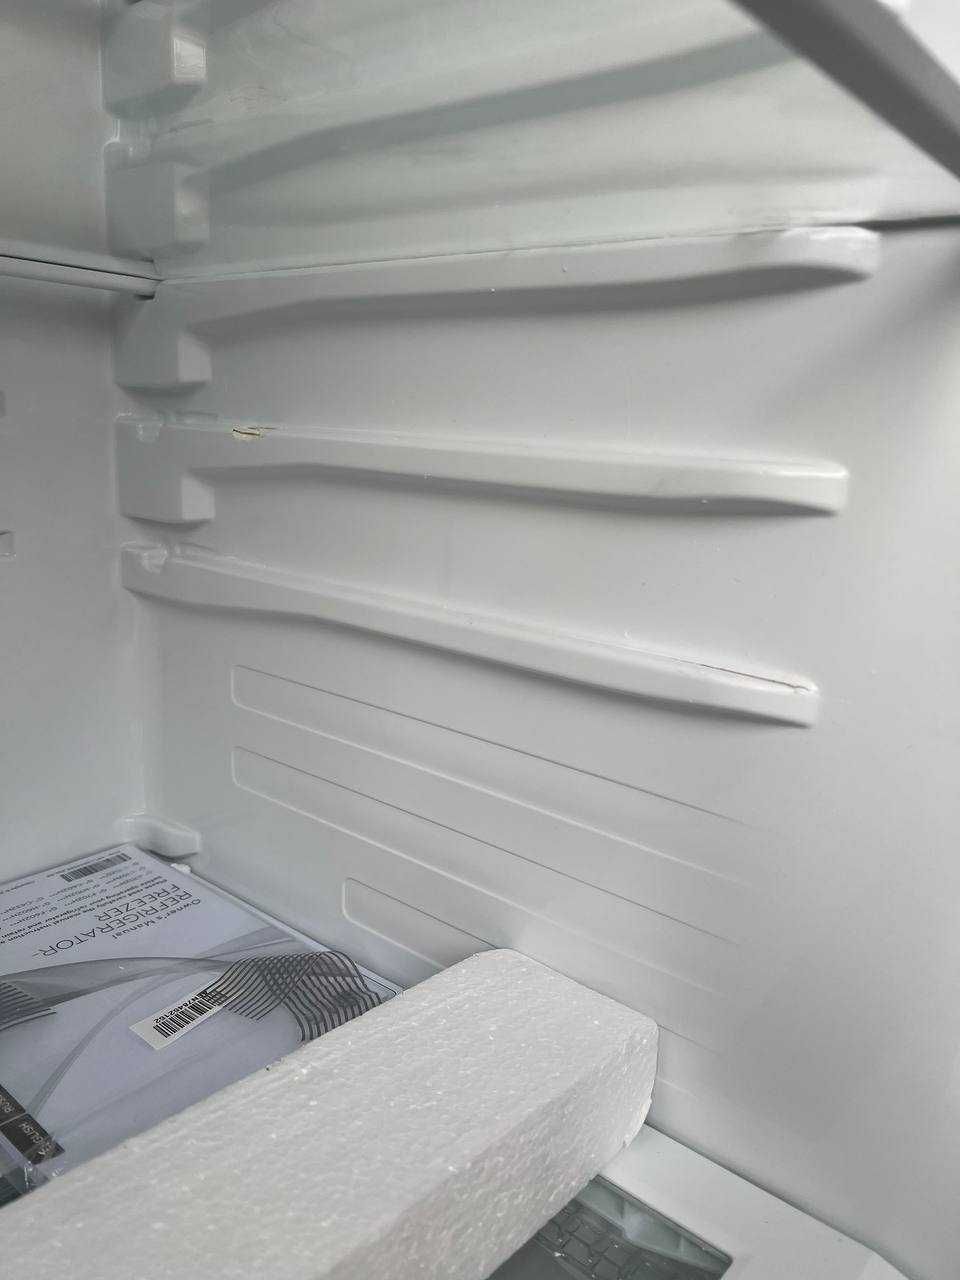 Холодильник    LG